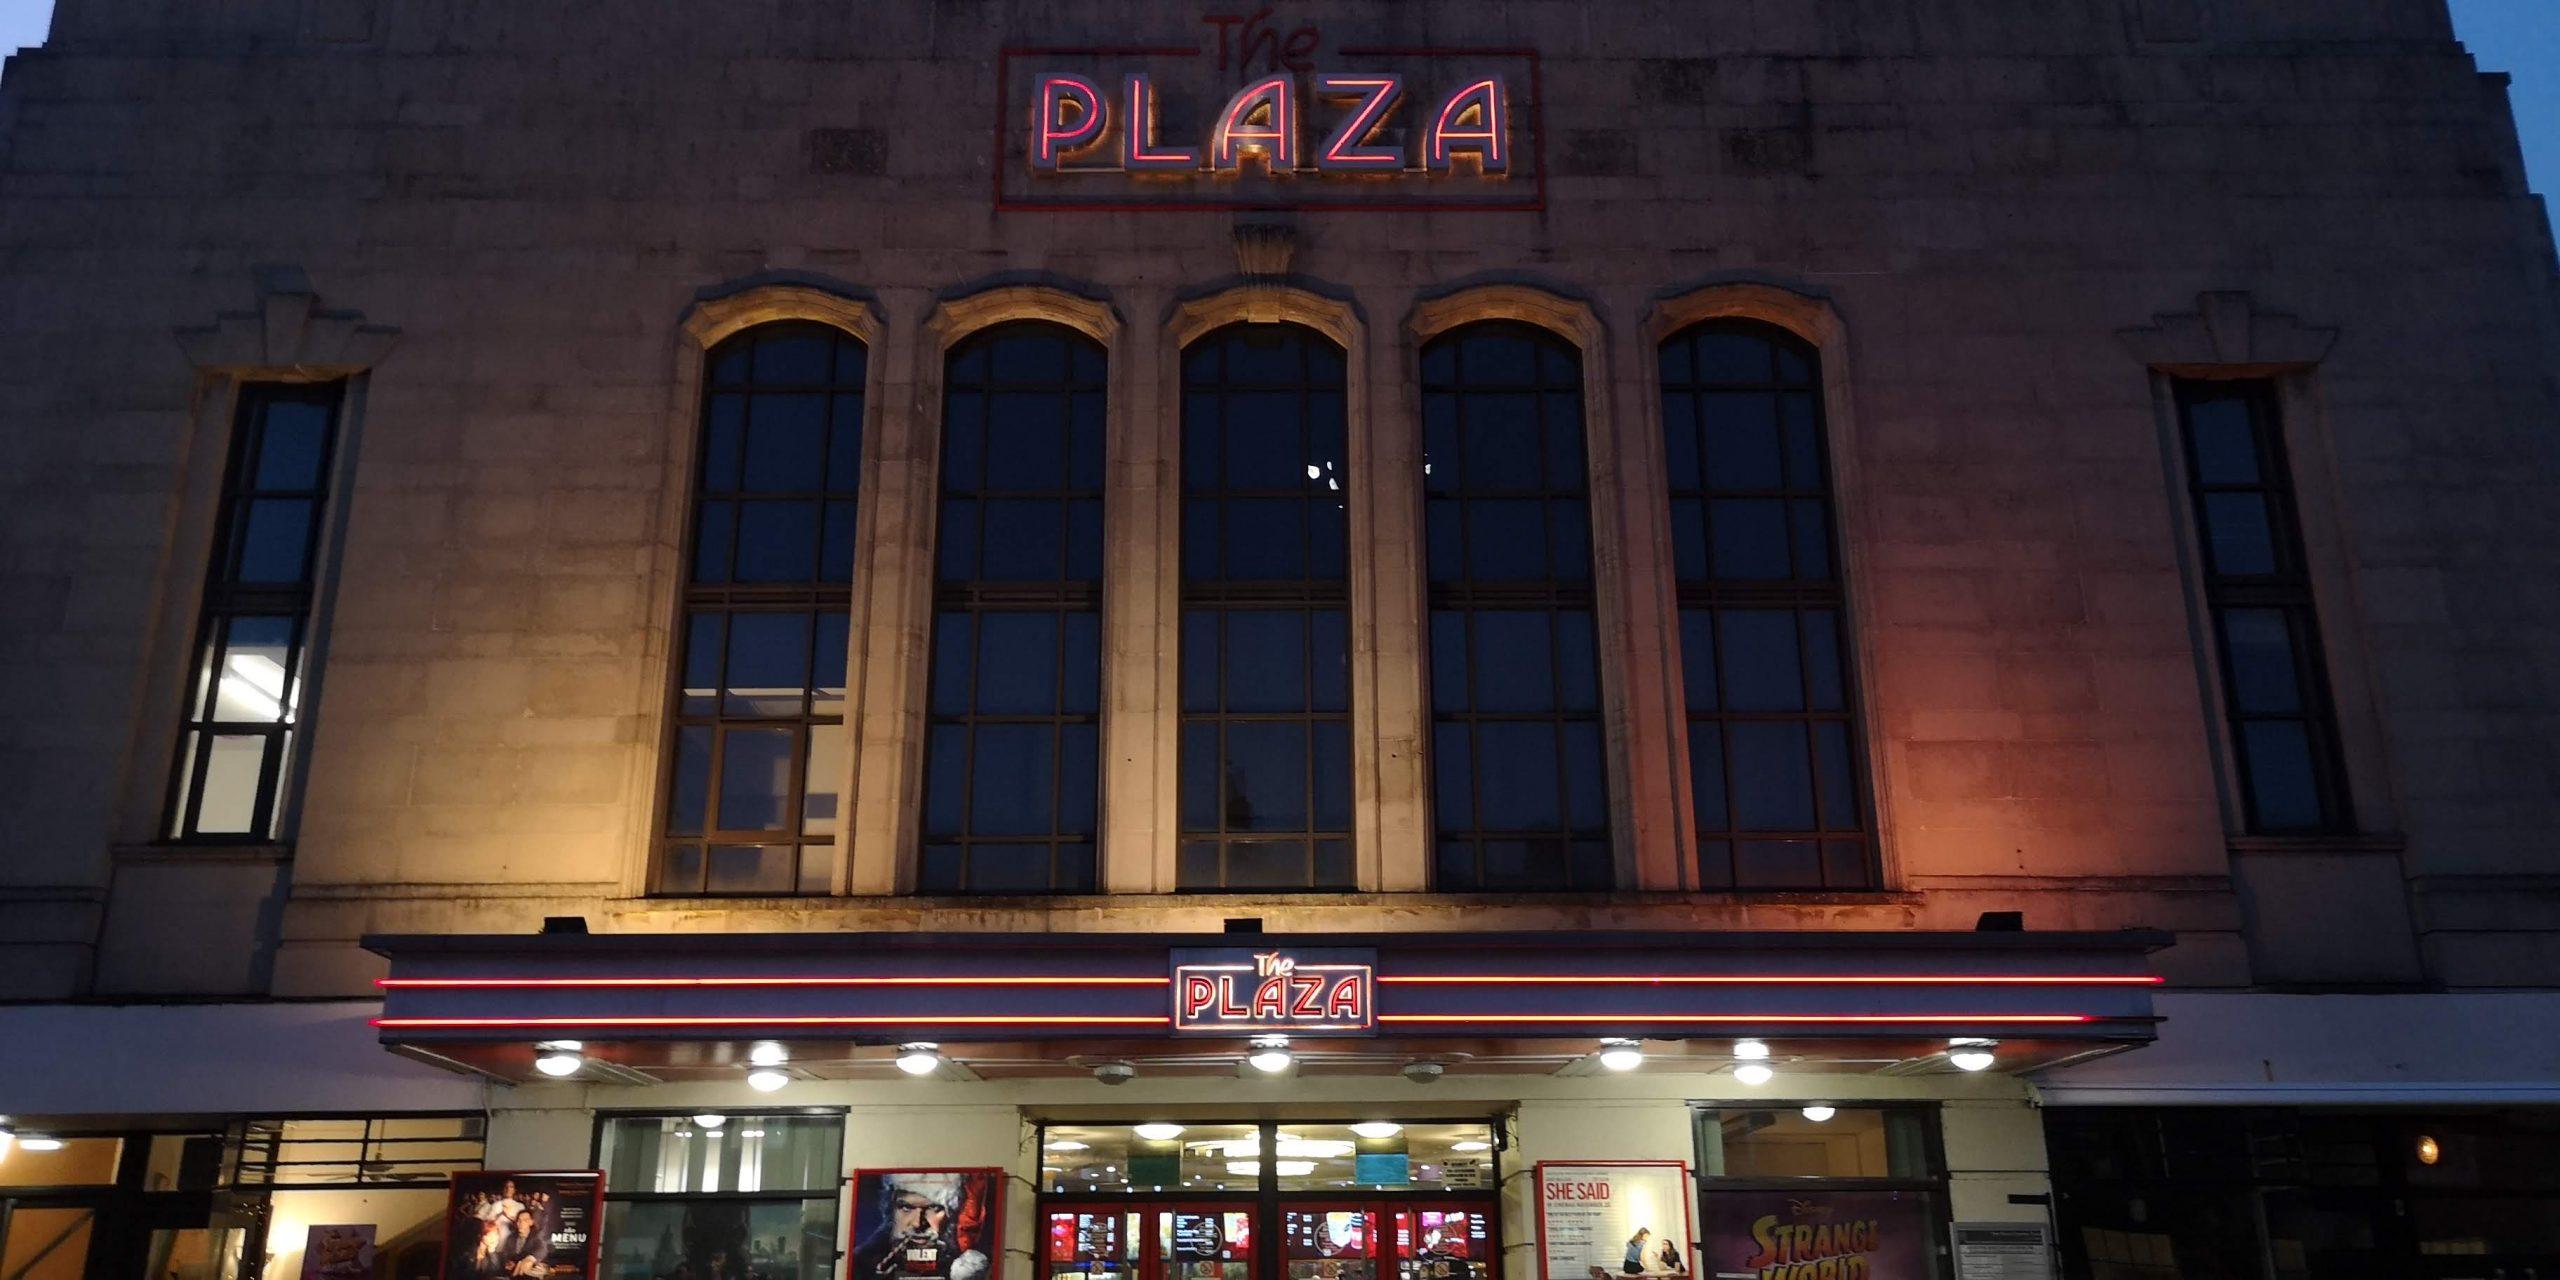 Plaza cinema in truro at night